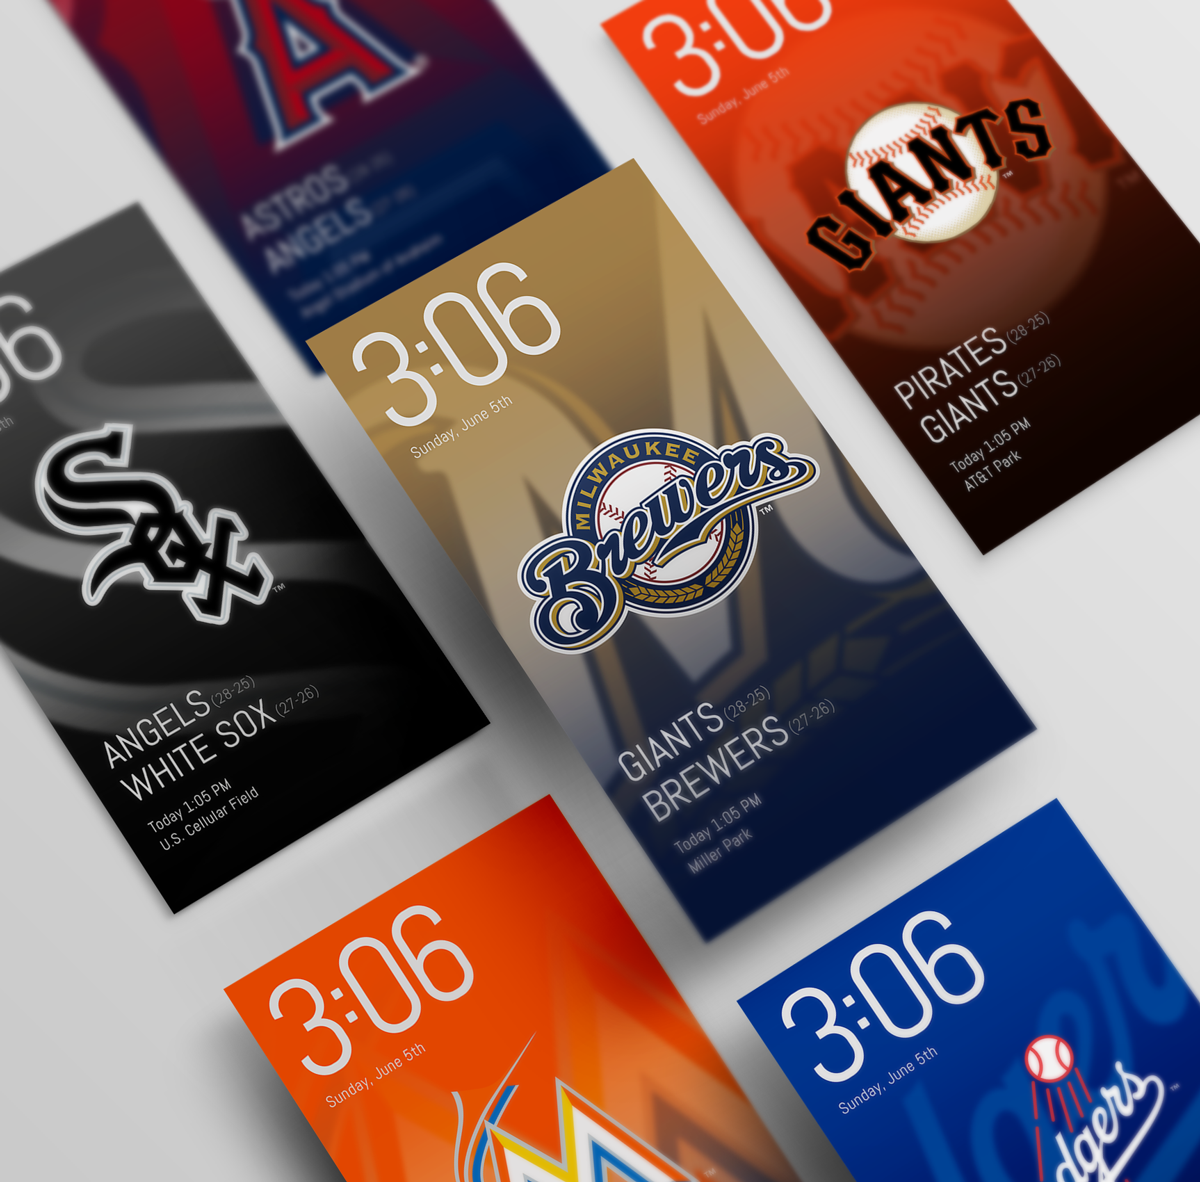 Samsung mlb baseball Lockscreen wallpaper widget samsung galaxy visual design